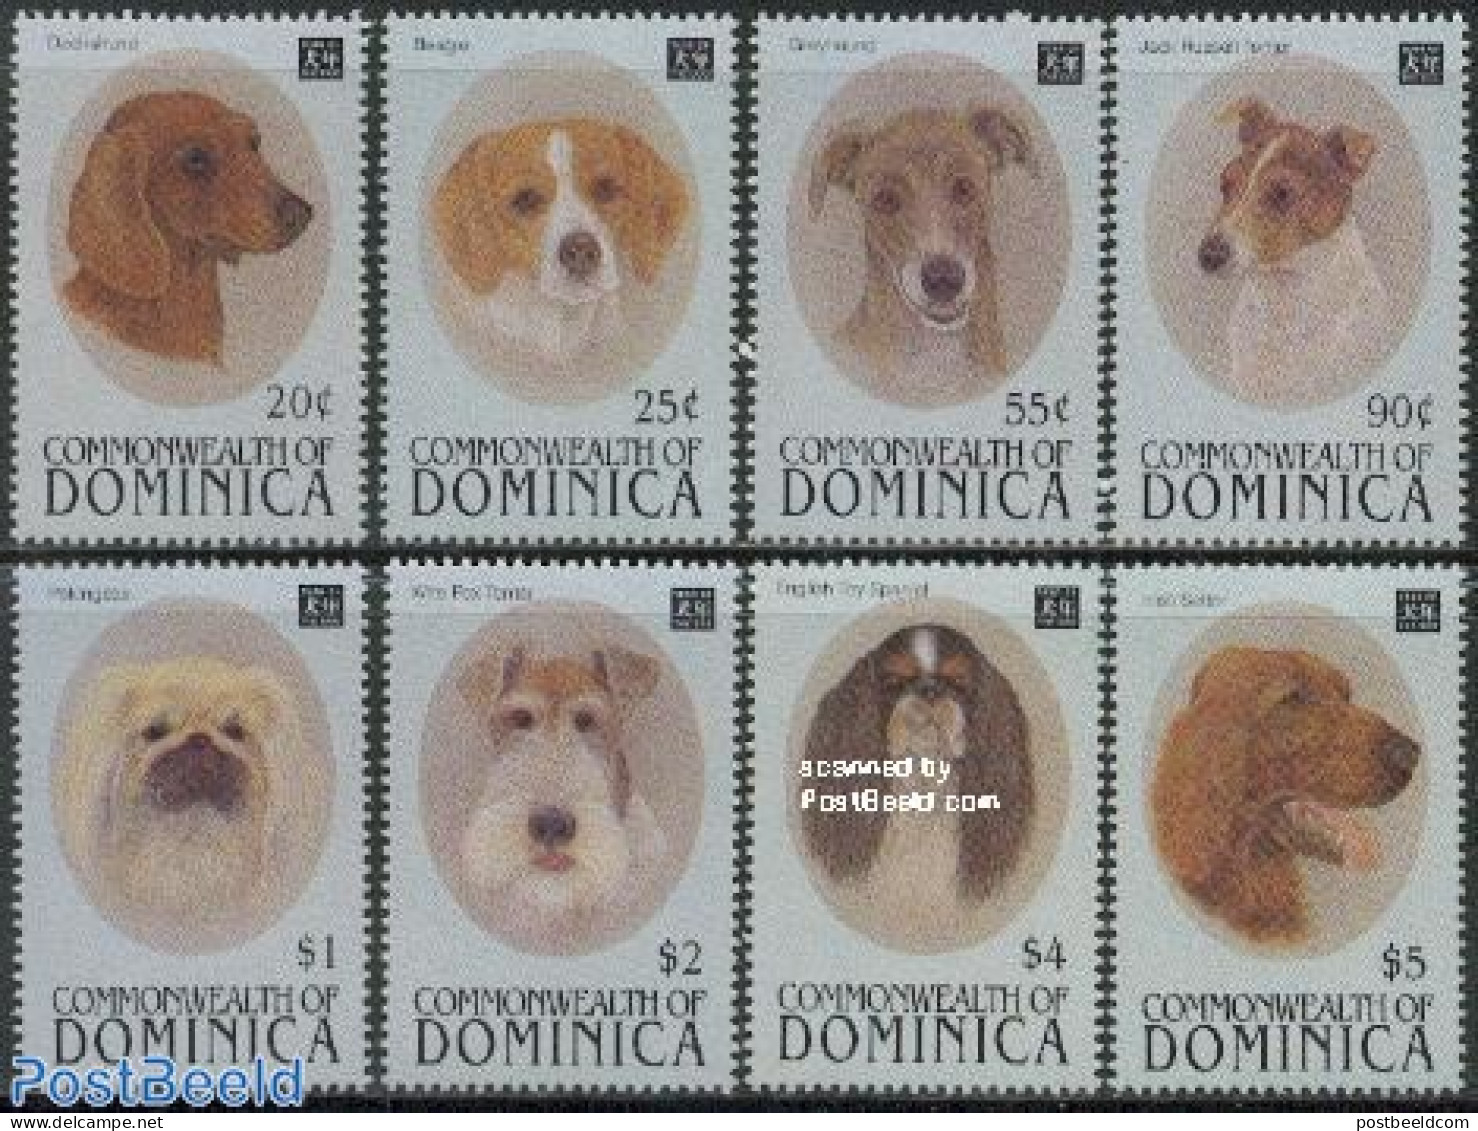 Dominica 1994 Dogs 8v, Mint NH, Nature - Dogs - Repubblica Domenicana